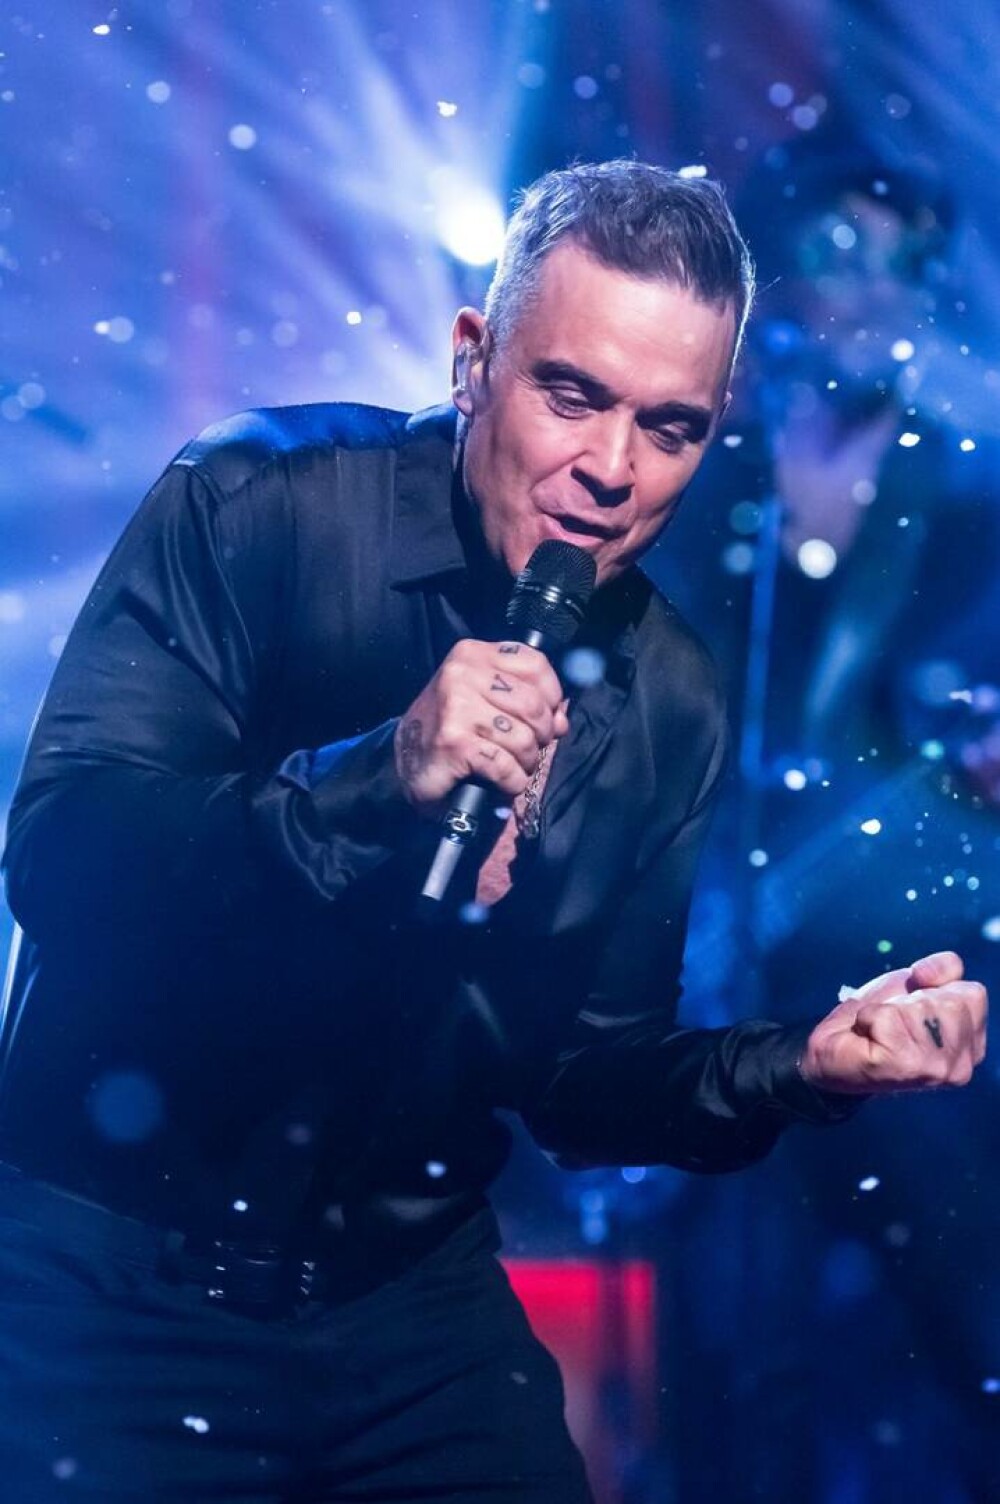 Momente nebunești cu Robbie Williams, în 30 de ani de carieră. Starul rock aniversează 50 de ani | FOTO - Imaginea 3